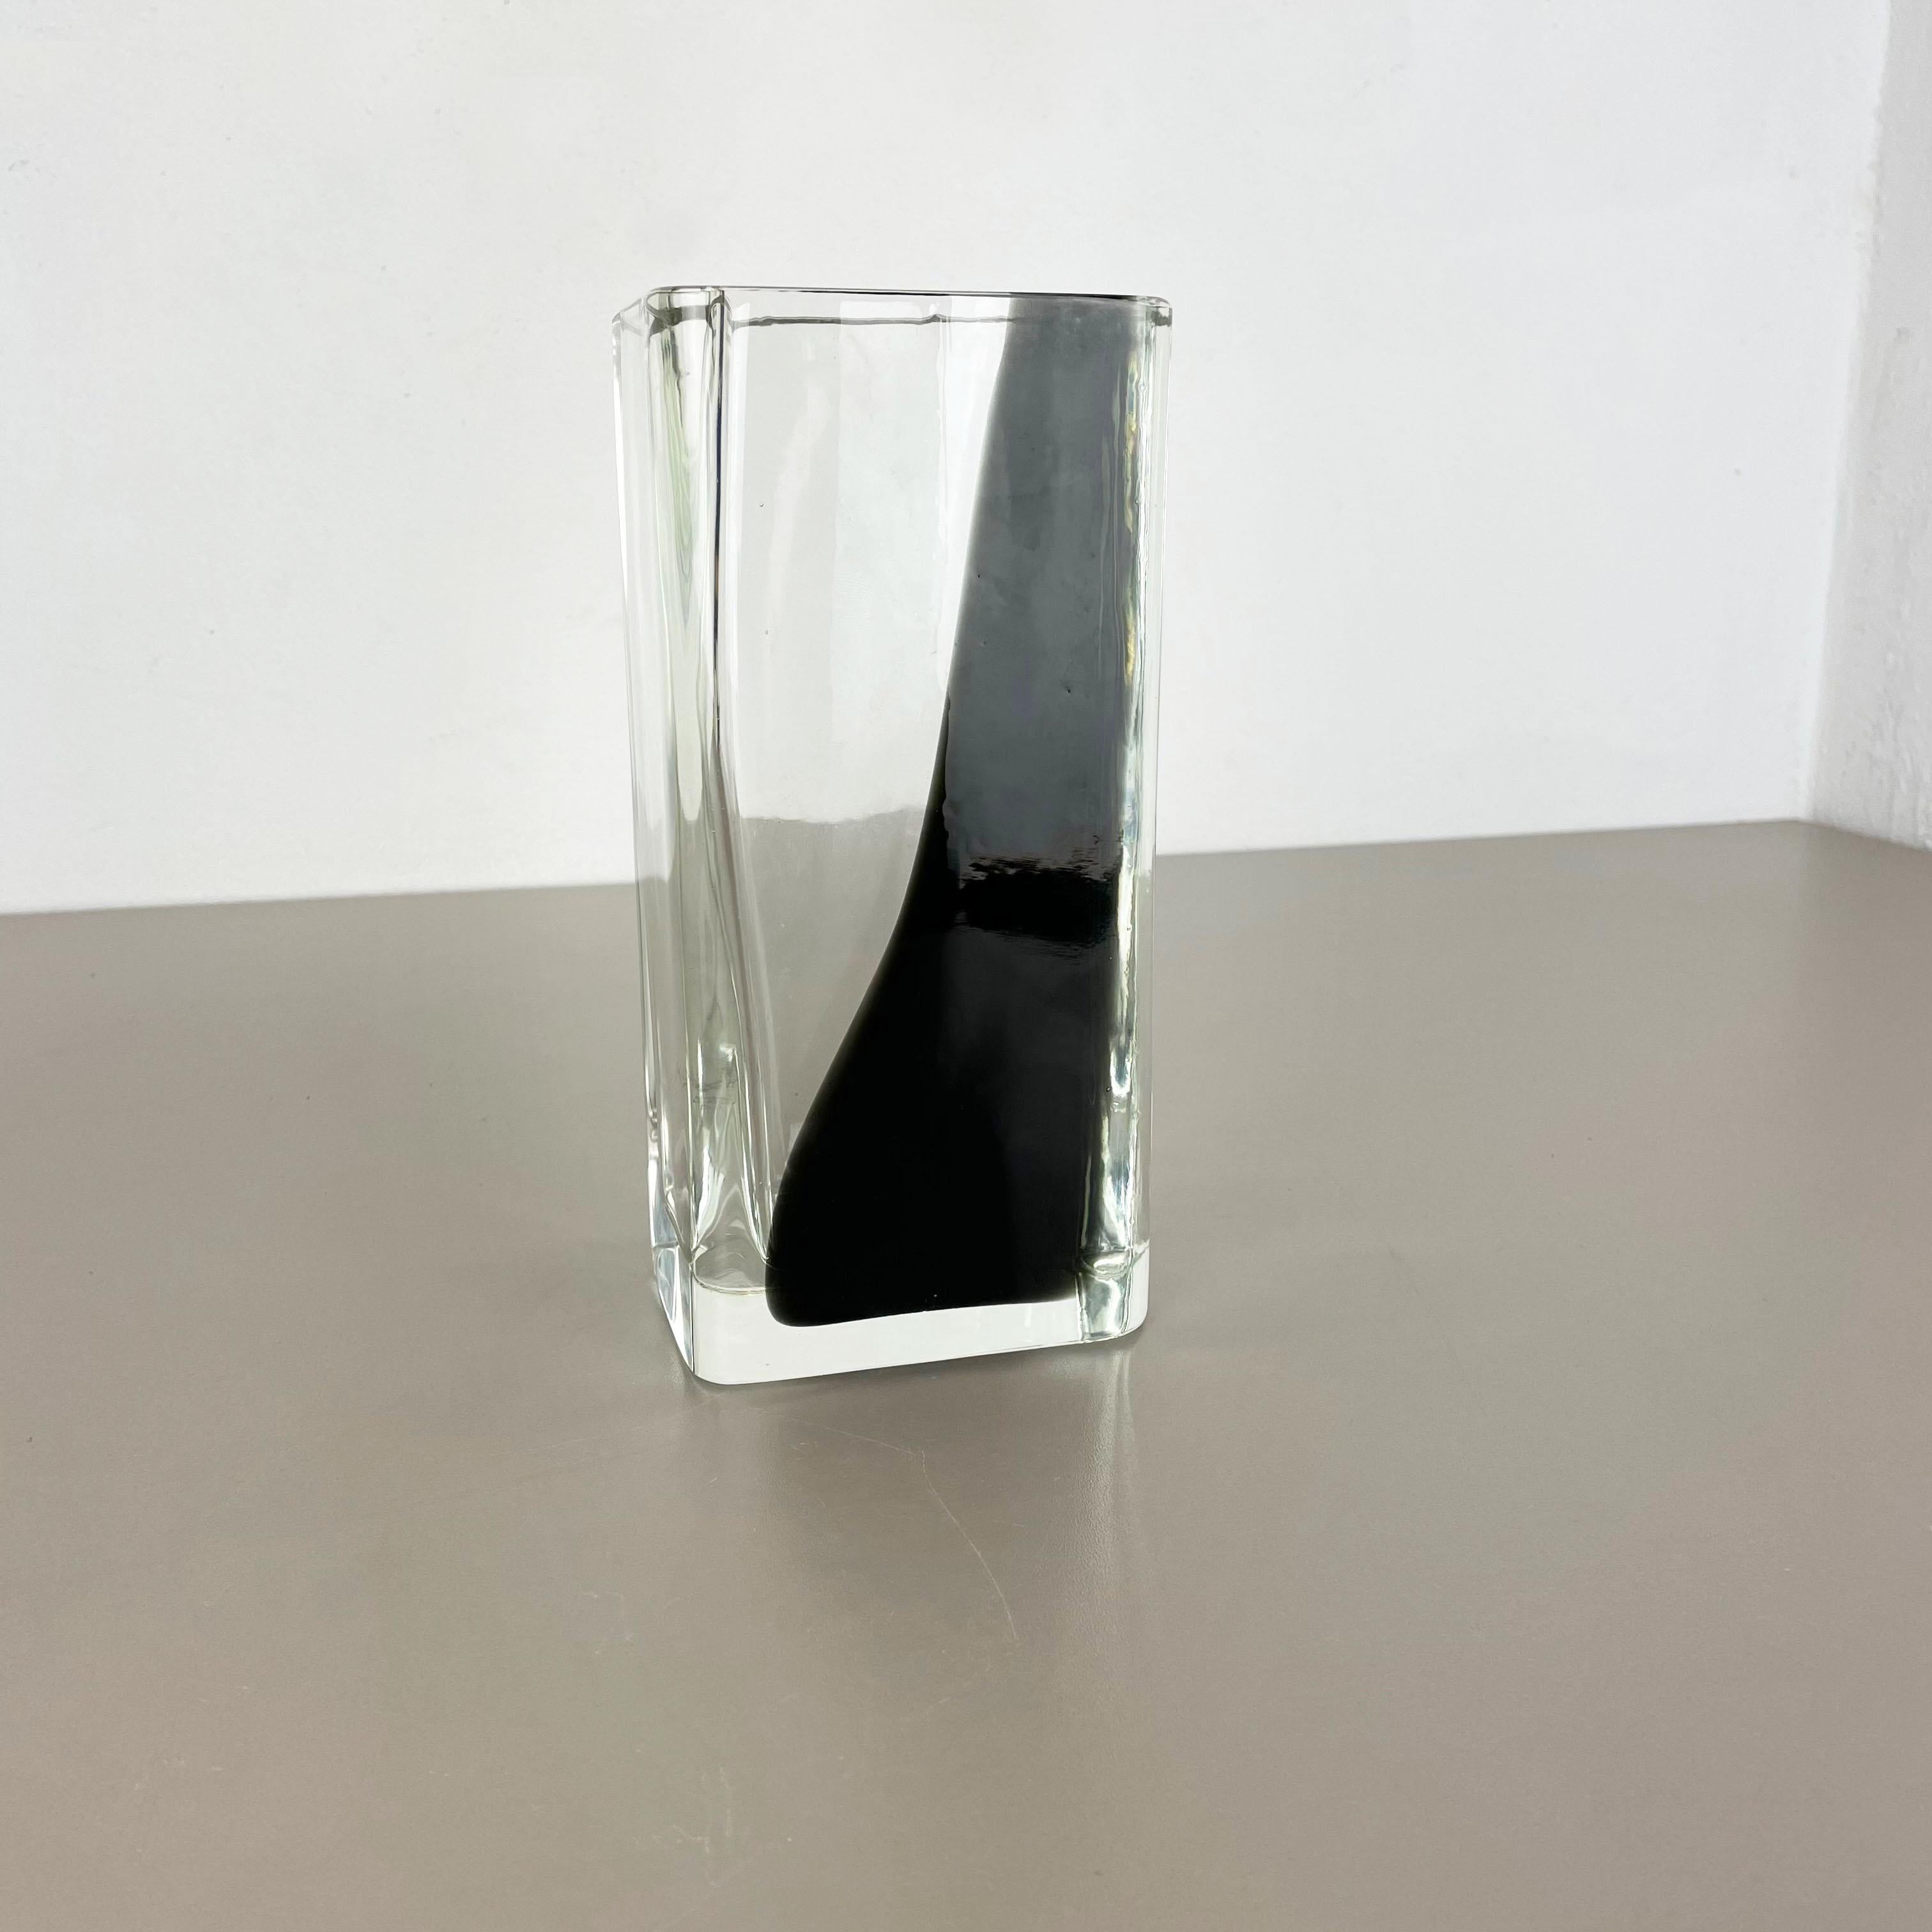 Artikel:

Vasen-Element aus Muranoglas


Entwurf:

Antonio da Ros


Produzent:

Cenedese Vetri (markiert unter der Vase)


Herkunft:

Murano, Italien


Jahrzehnt:

1960s-1970s


Diese originelle Glasvase wurde in den 1960er